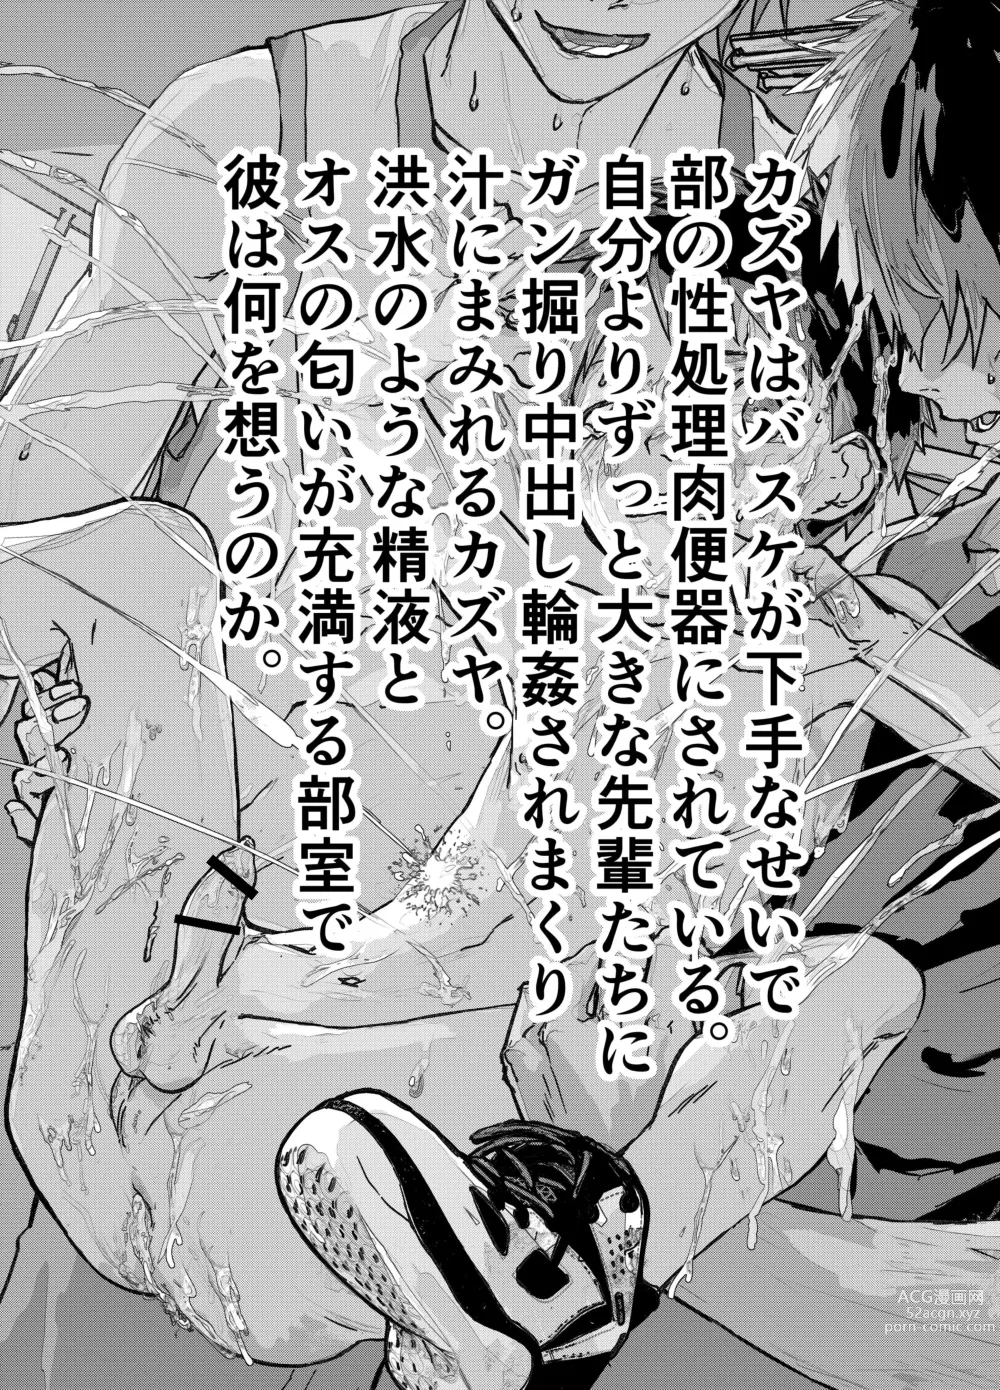 Page 3 of doujinshi Baske ga Heta dakara Shikata ga nai!